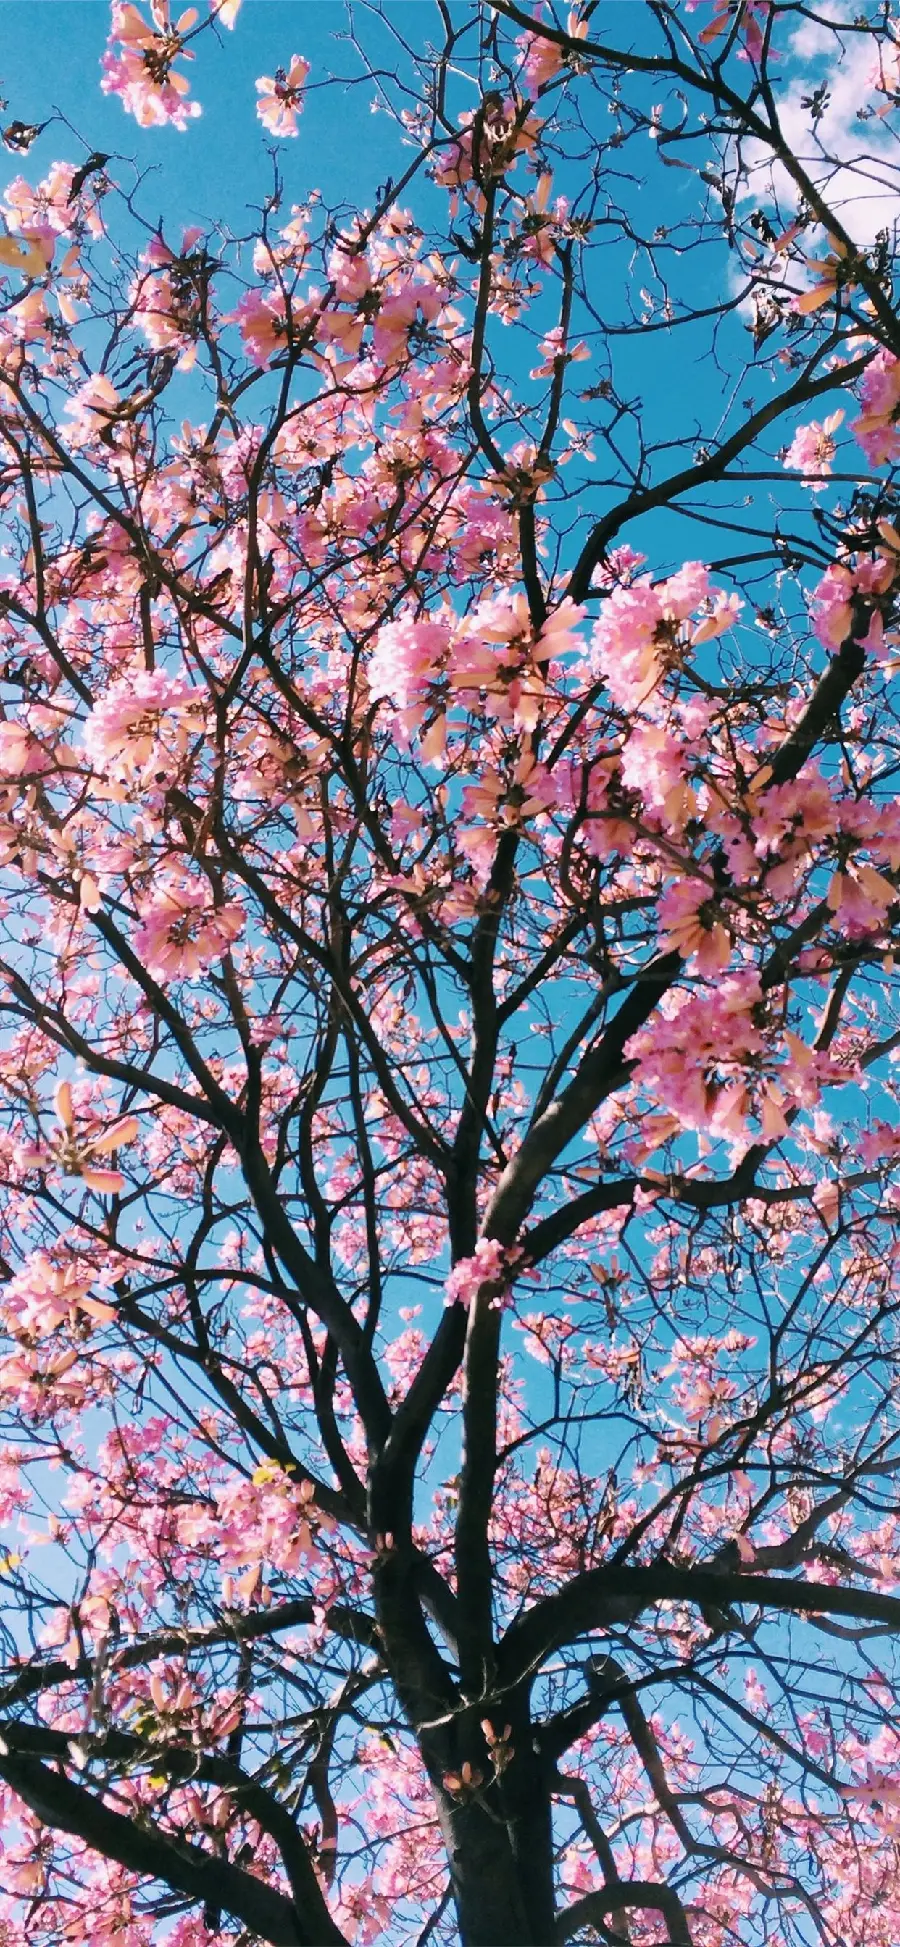 والپیپر بک گراند درخت گل دار شاداب و پر طراوت مخصوص اینستاگرام